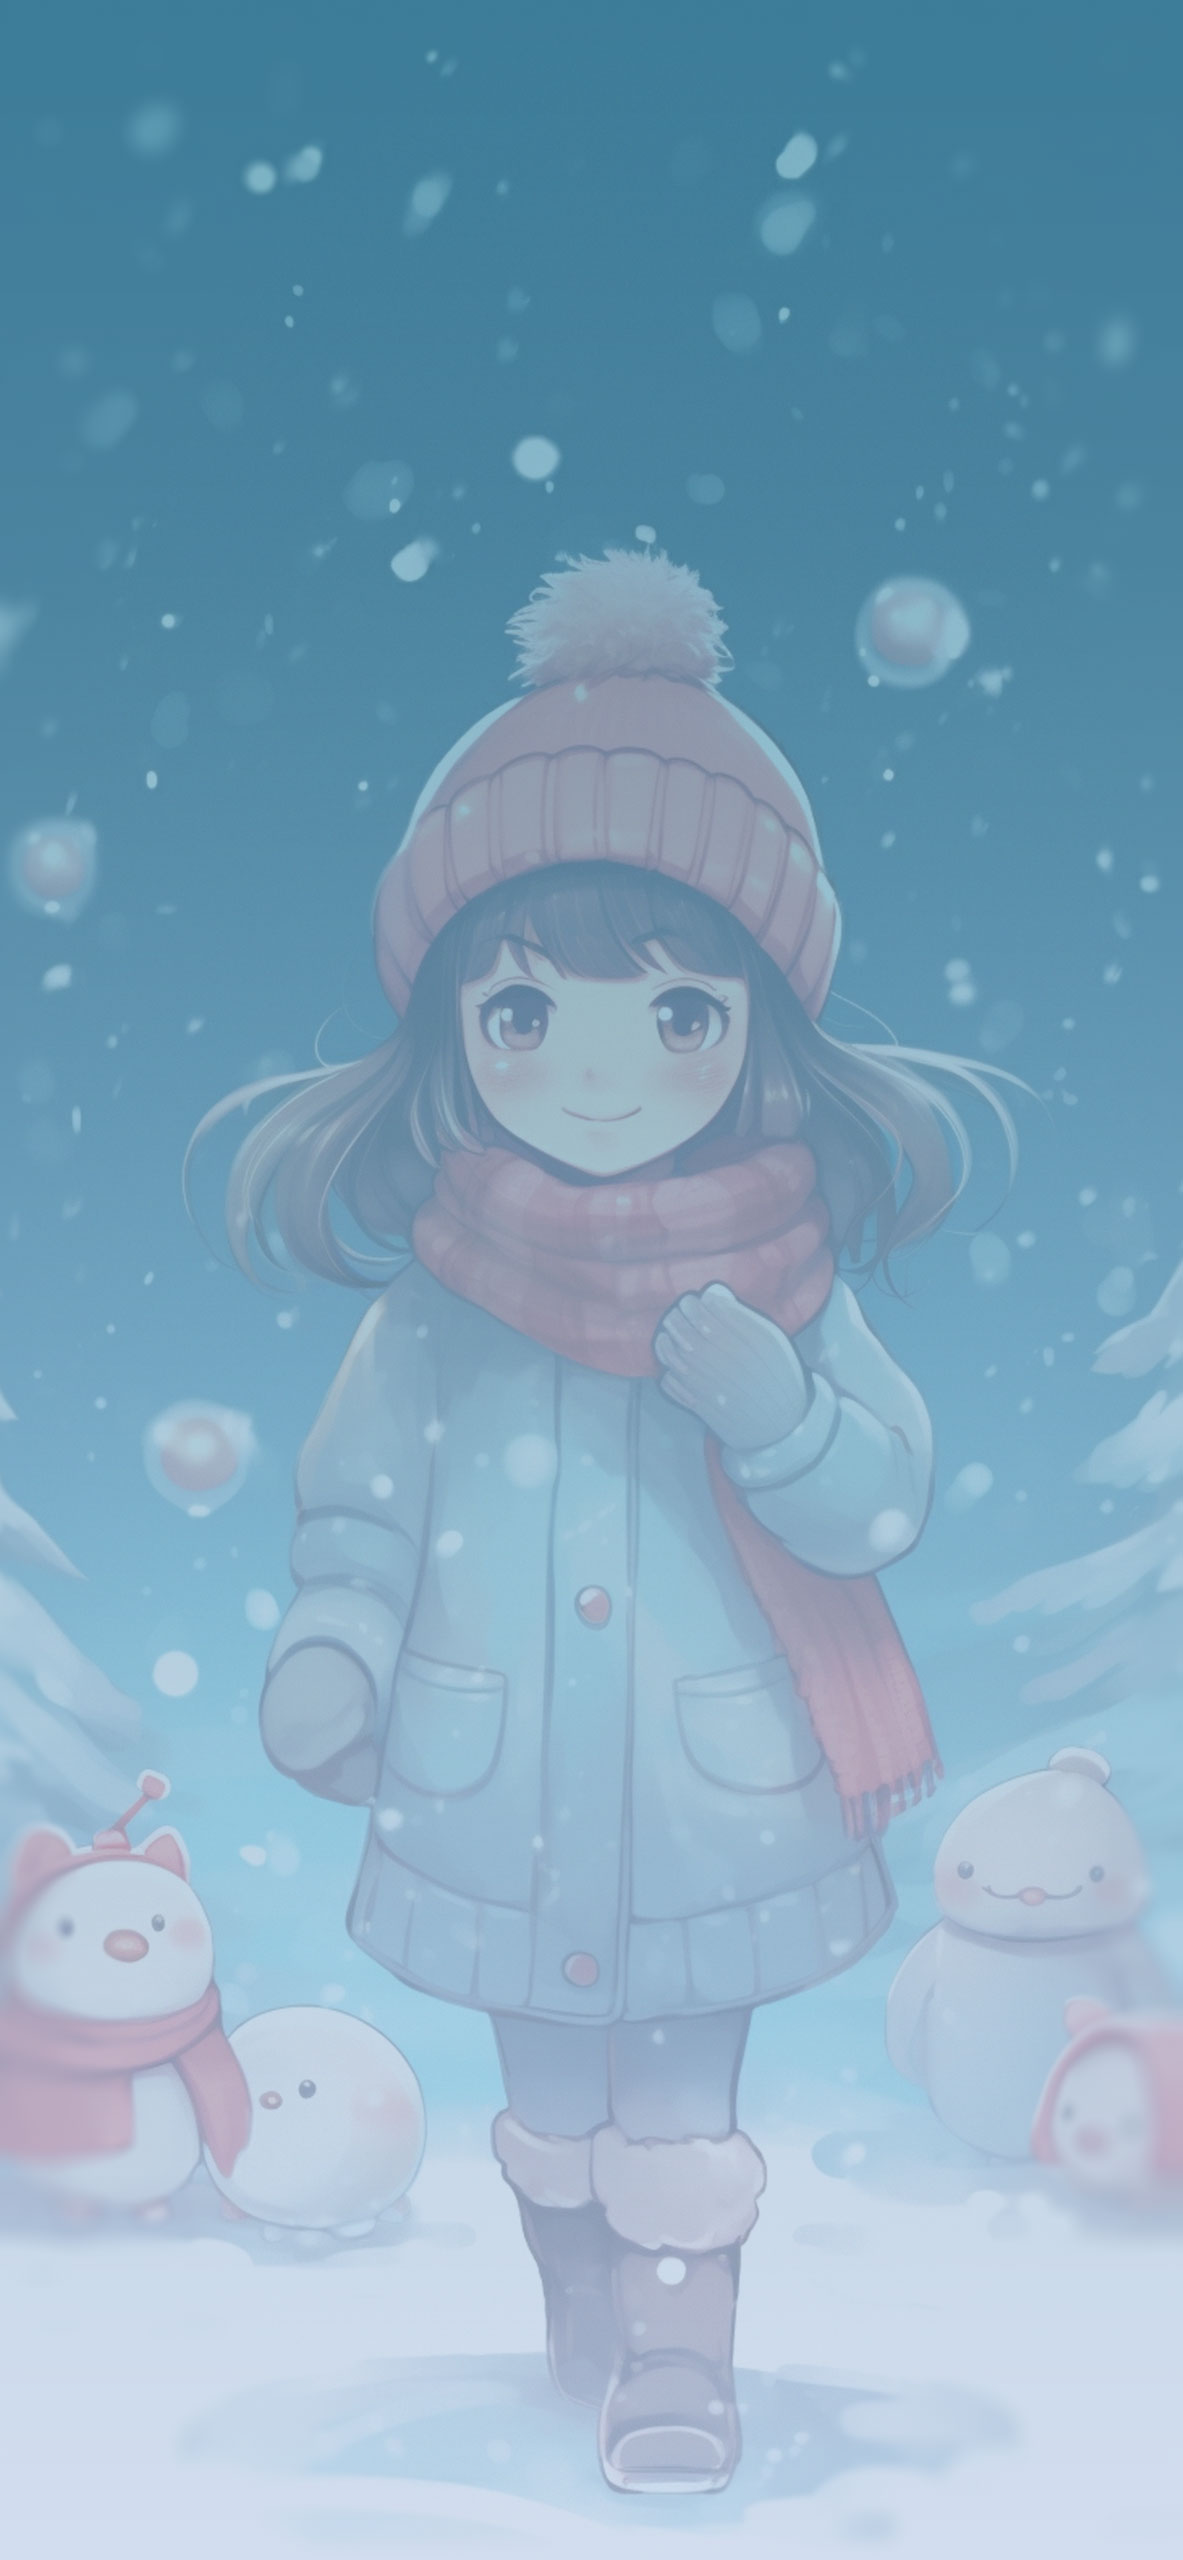 Cute little girl winter wallpaper Cute little girl winter wall